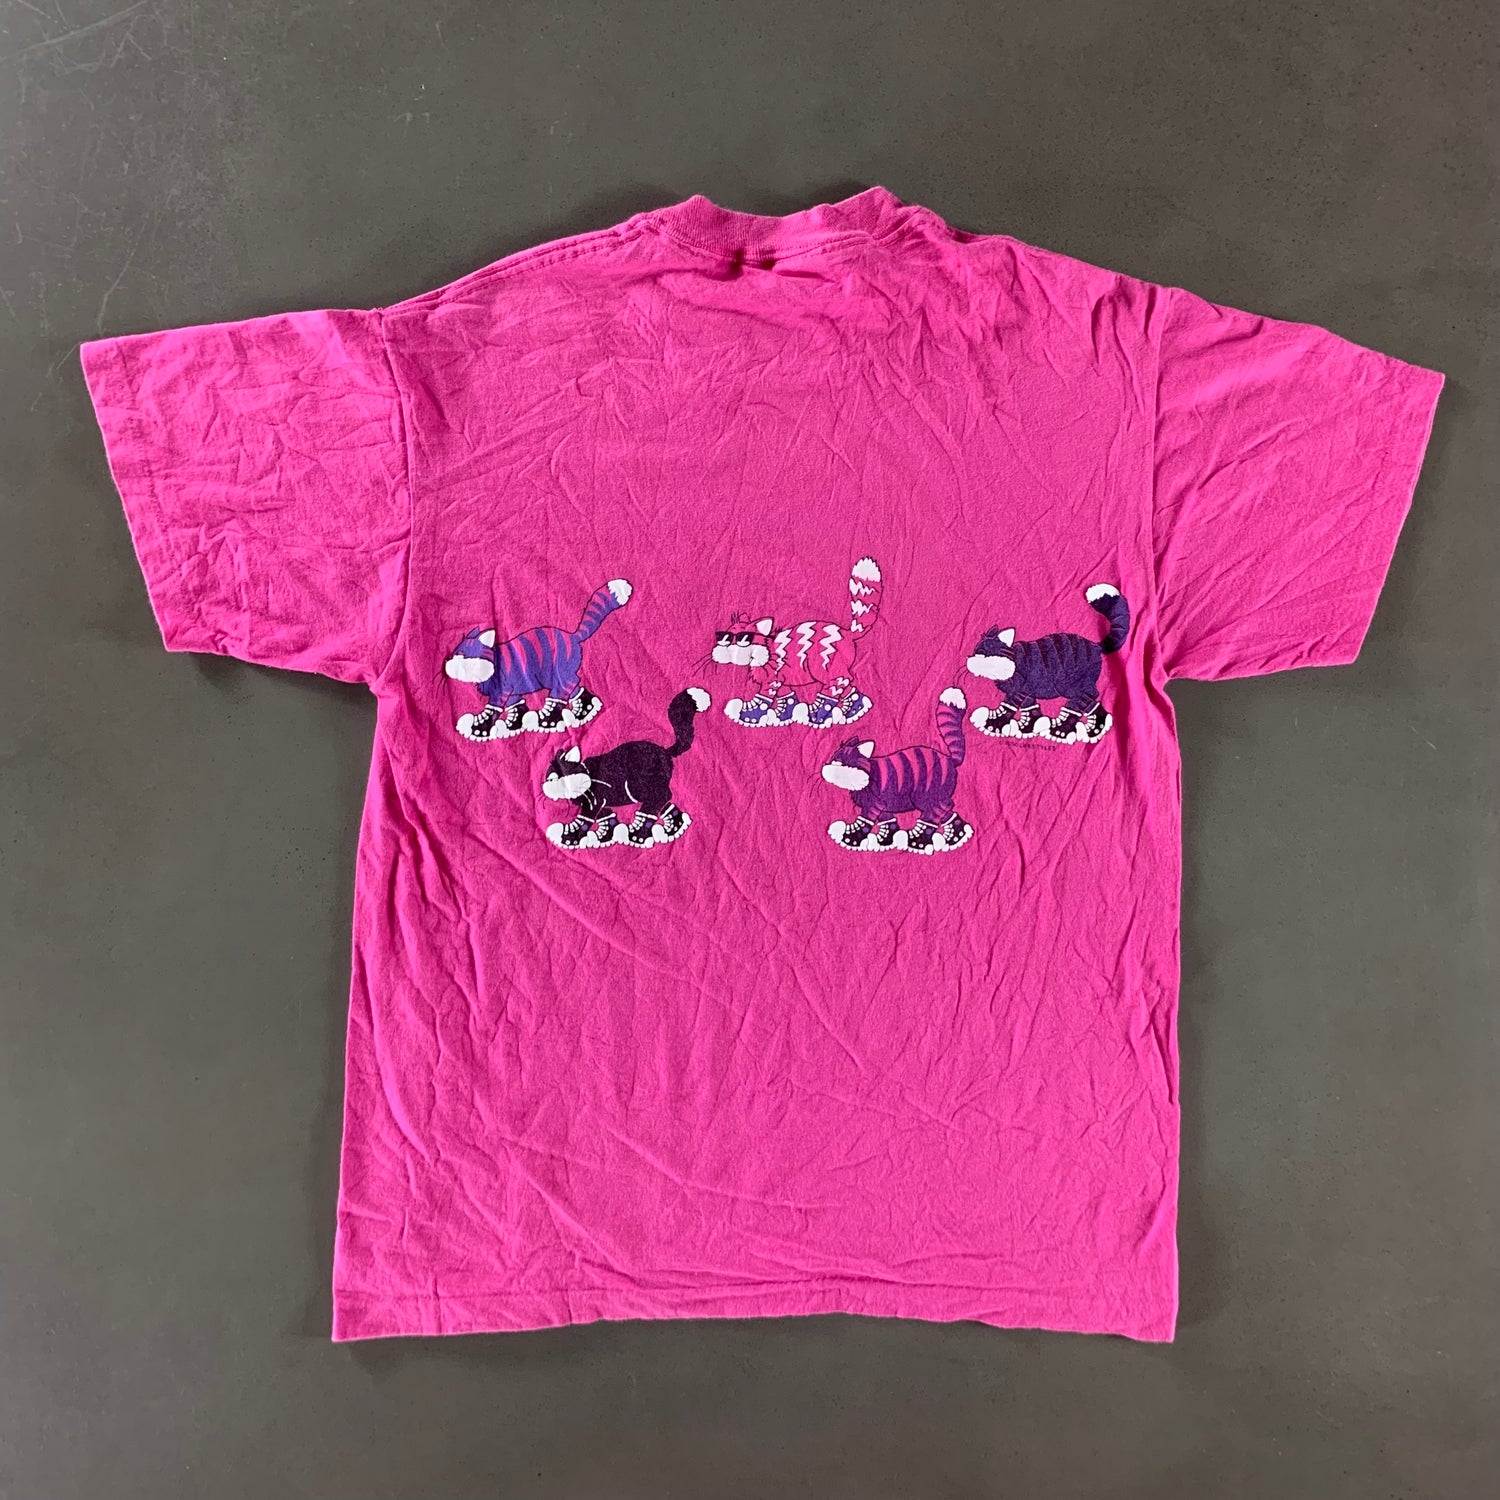 Vintage 1990s Cat T-shirt size Large